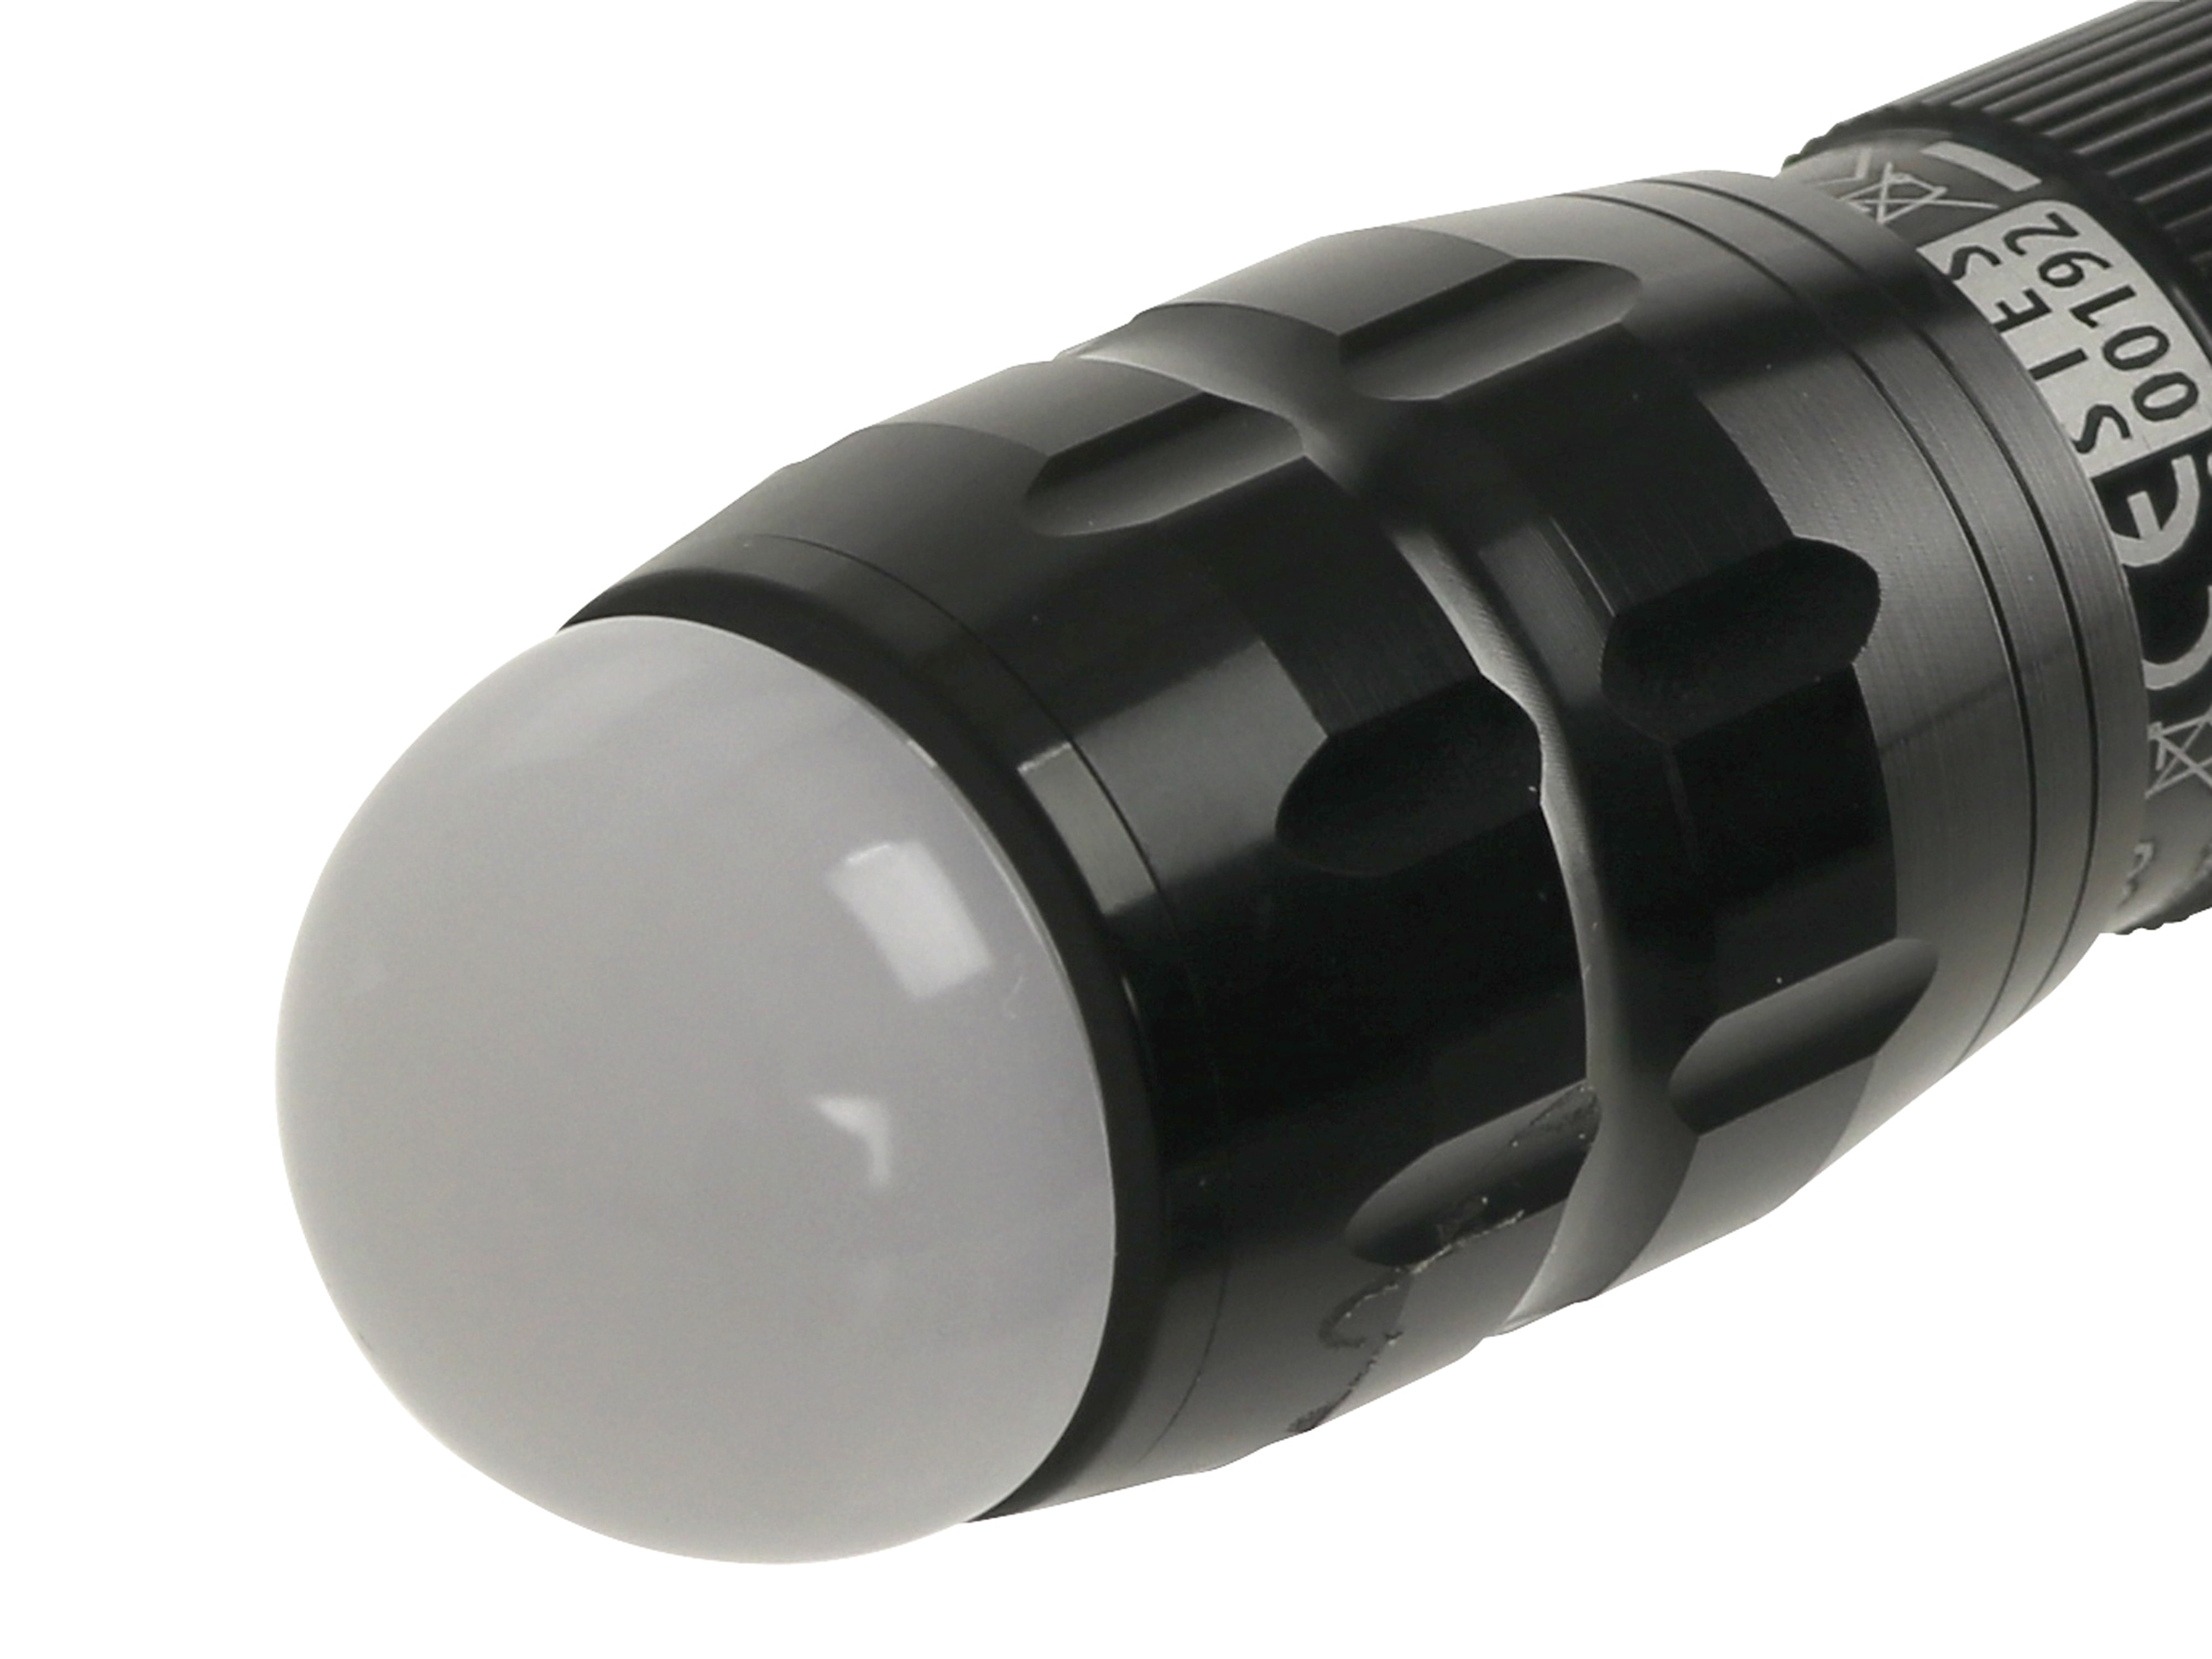 LED-Taschenlampe, WK765, Alu, schwarz